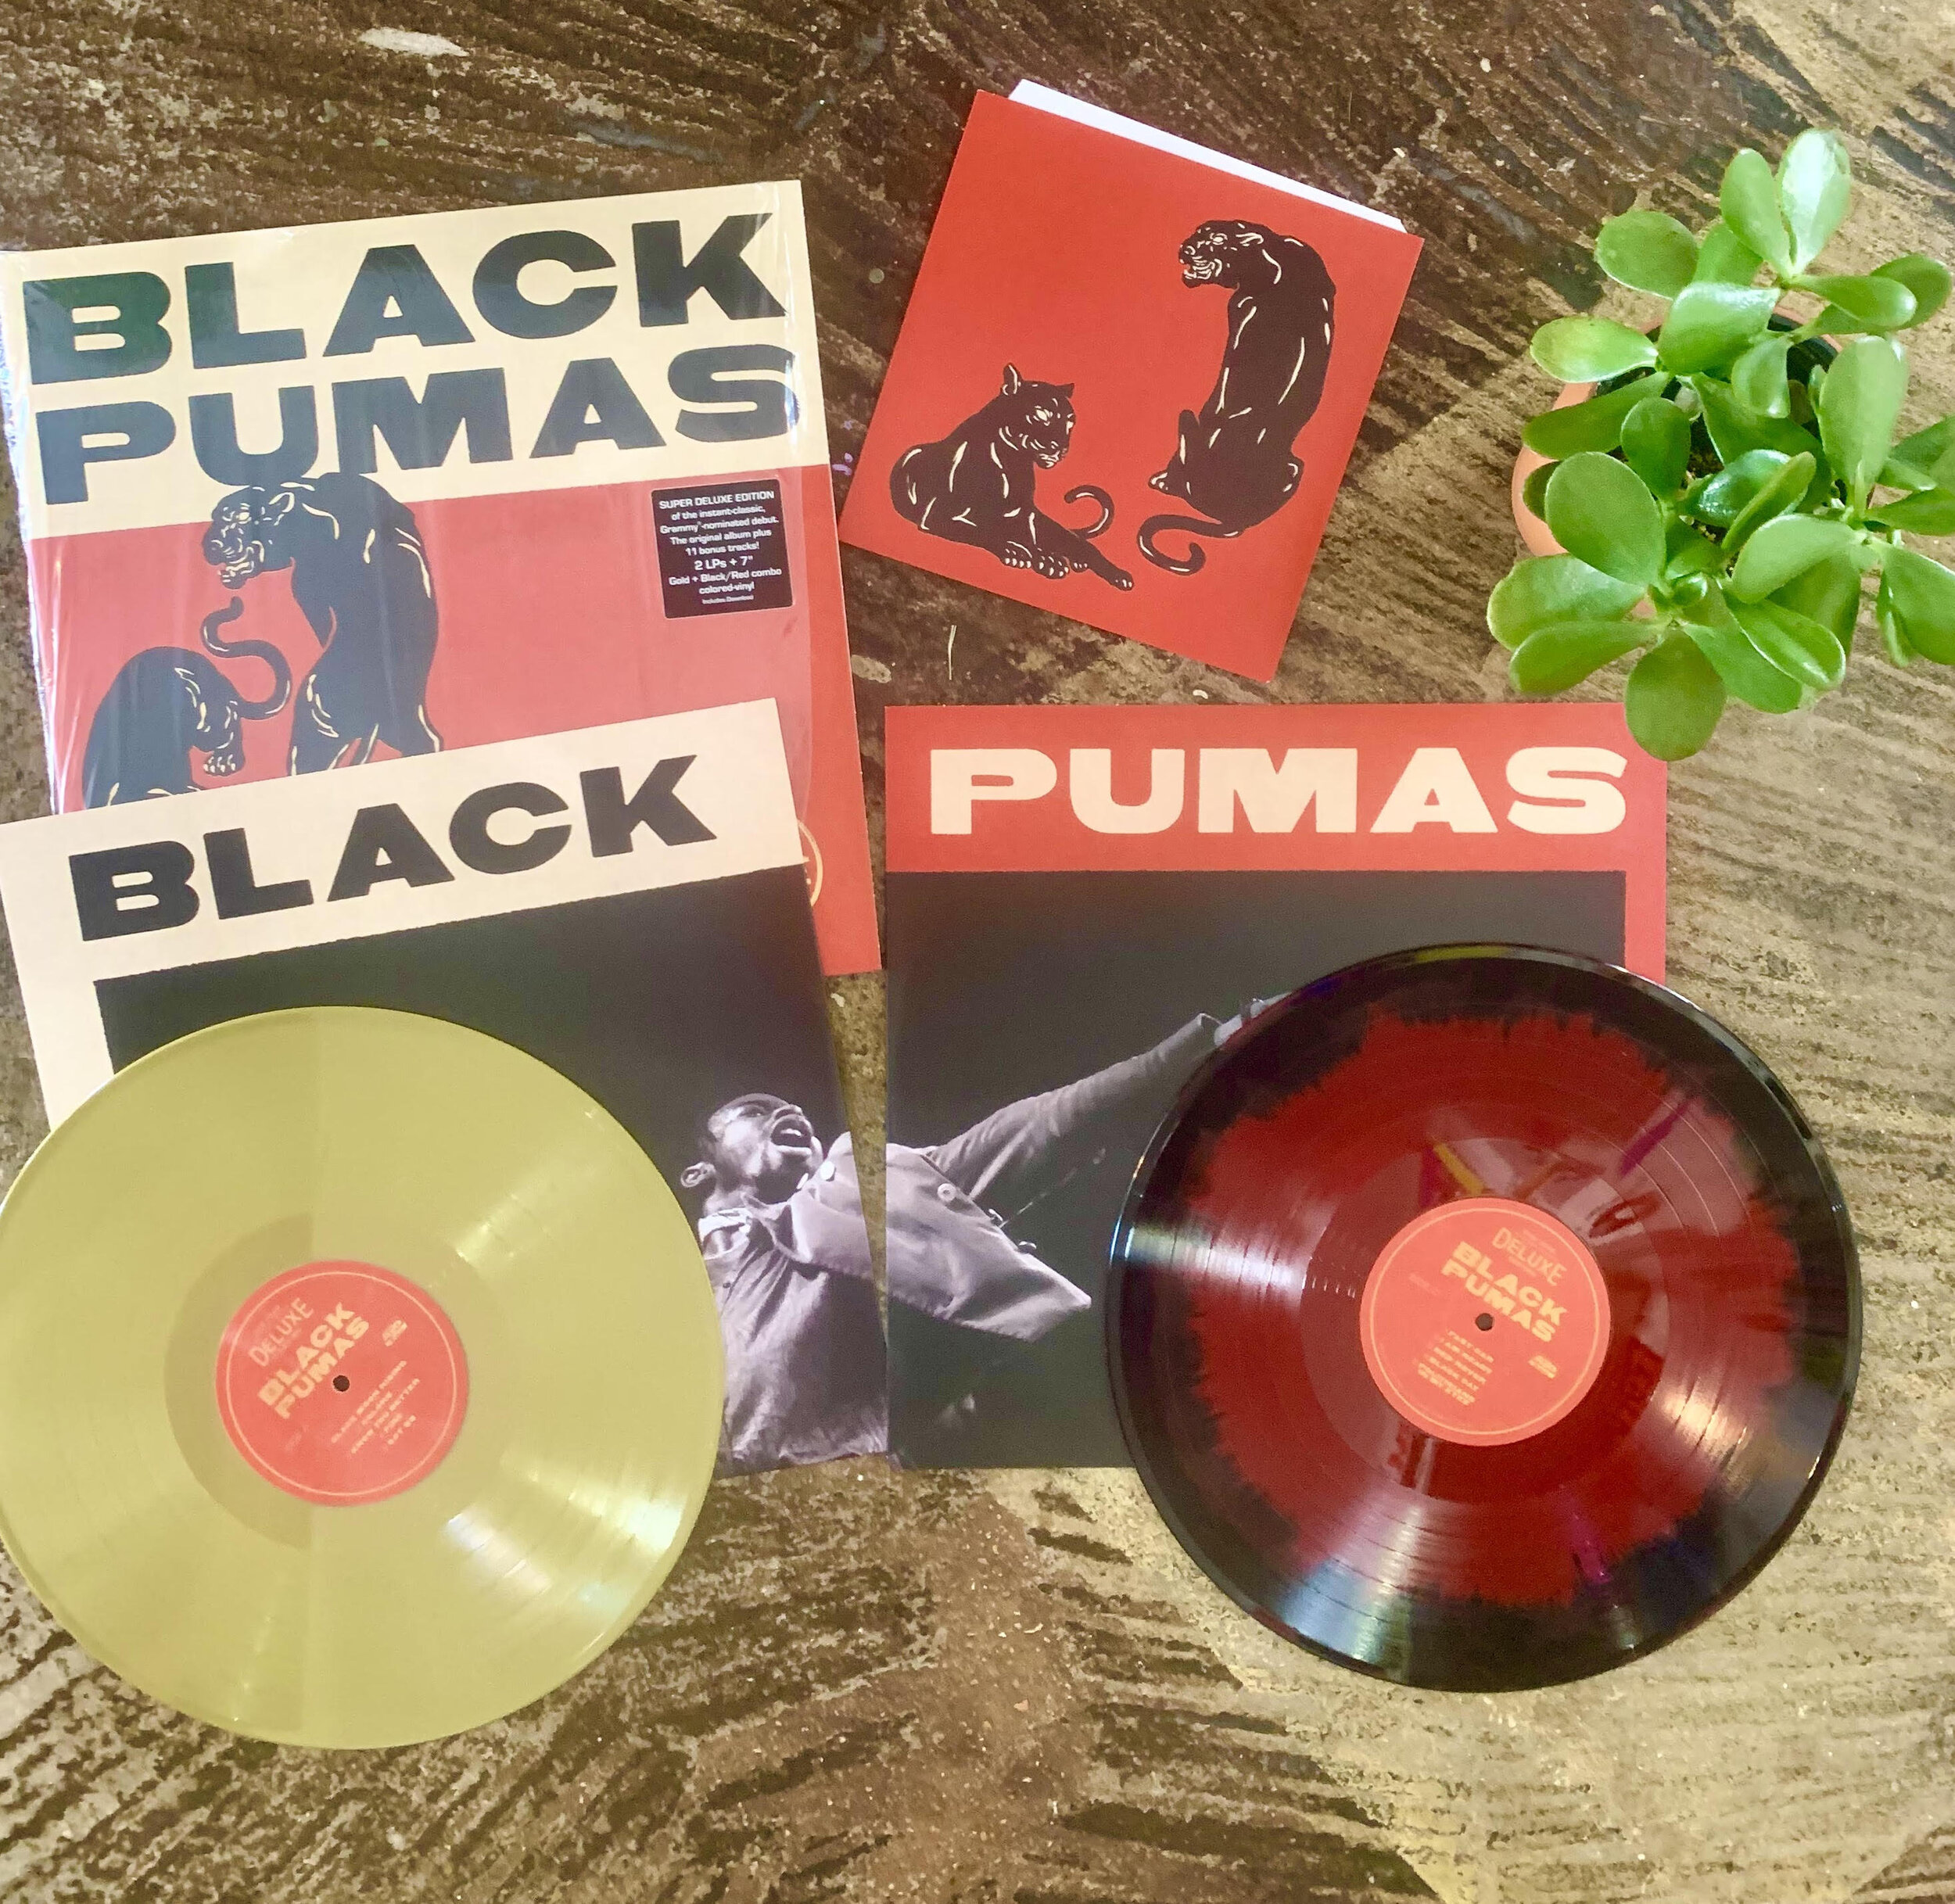 Black Pumas - vinyl records